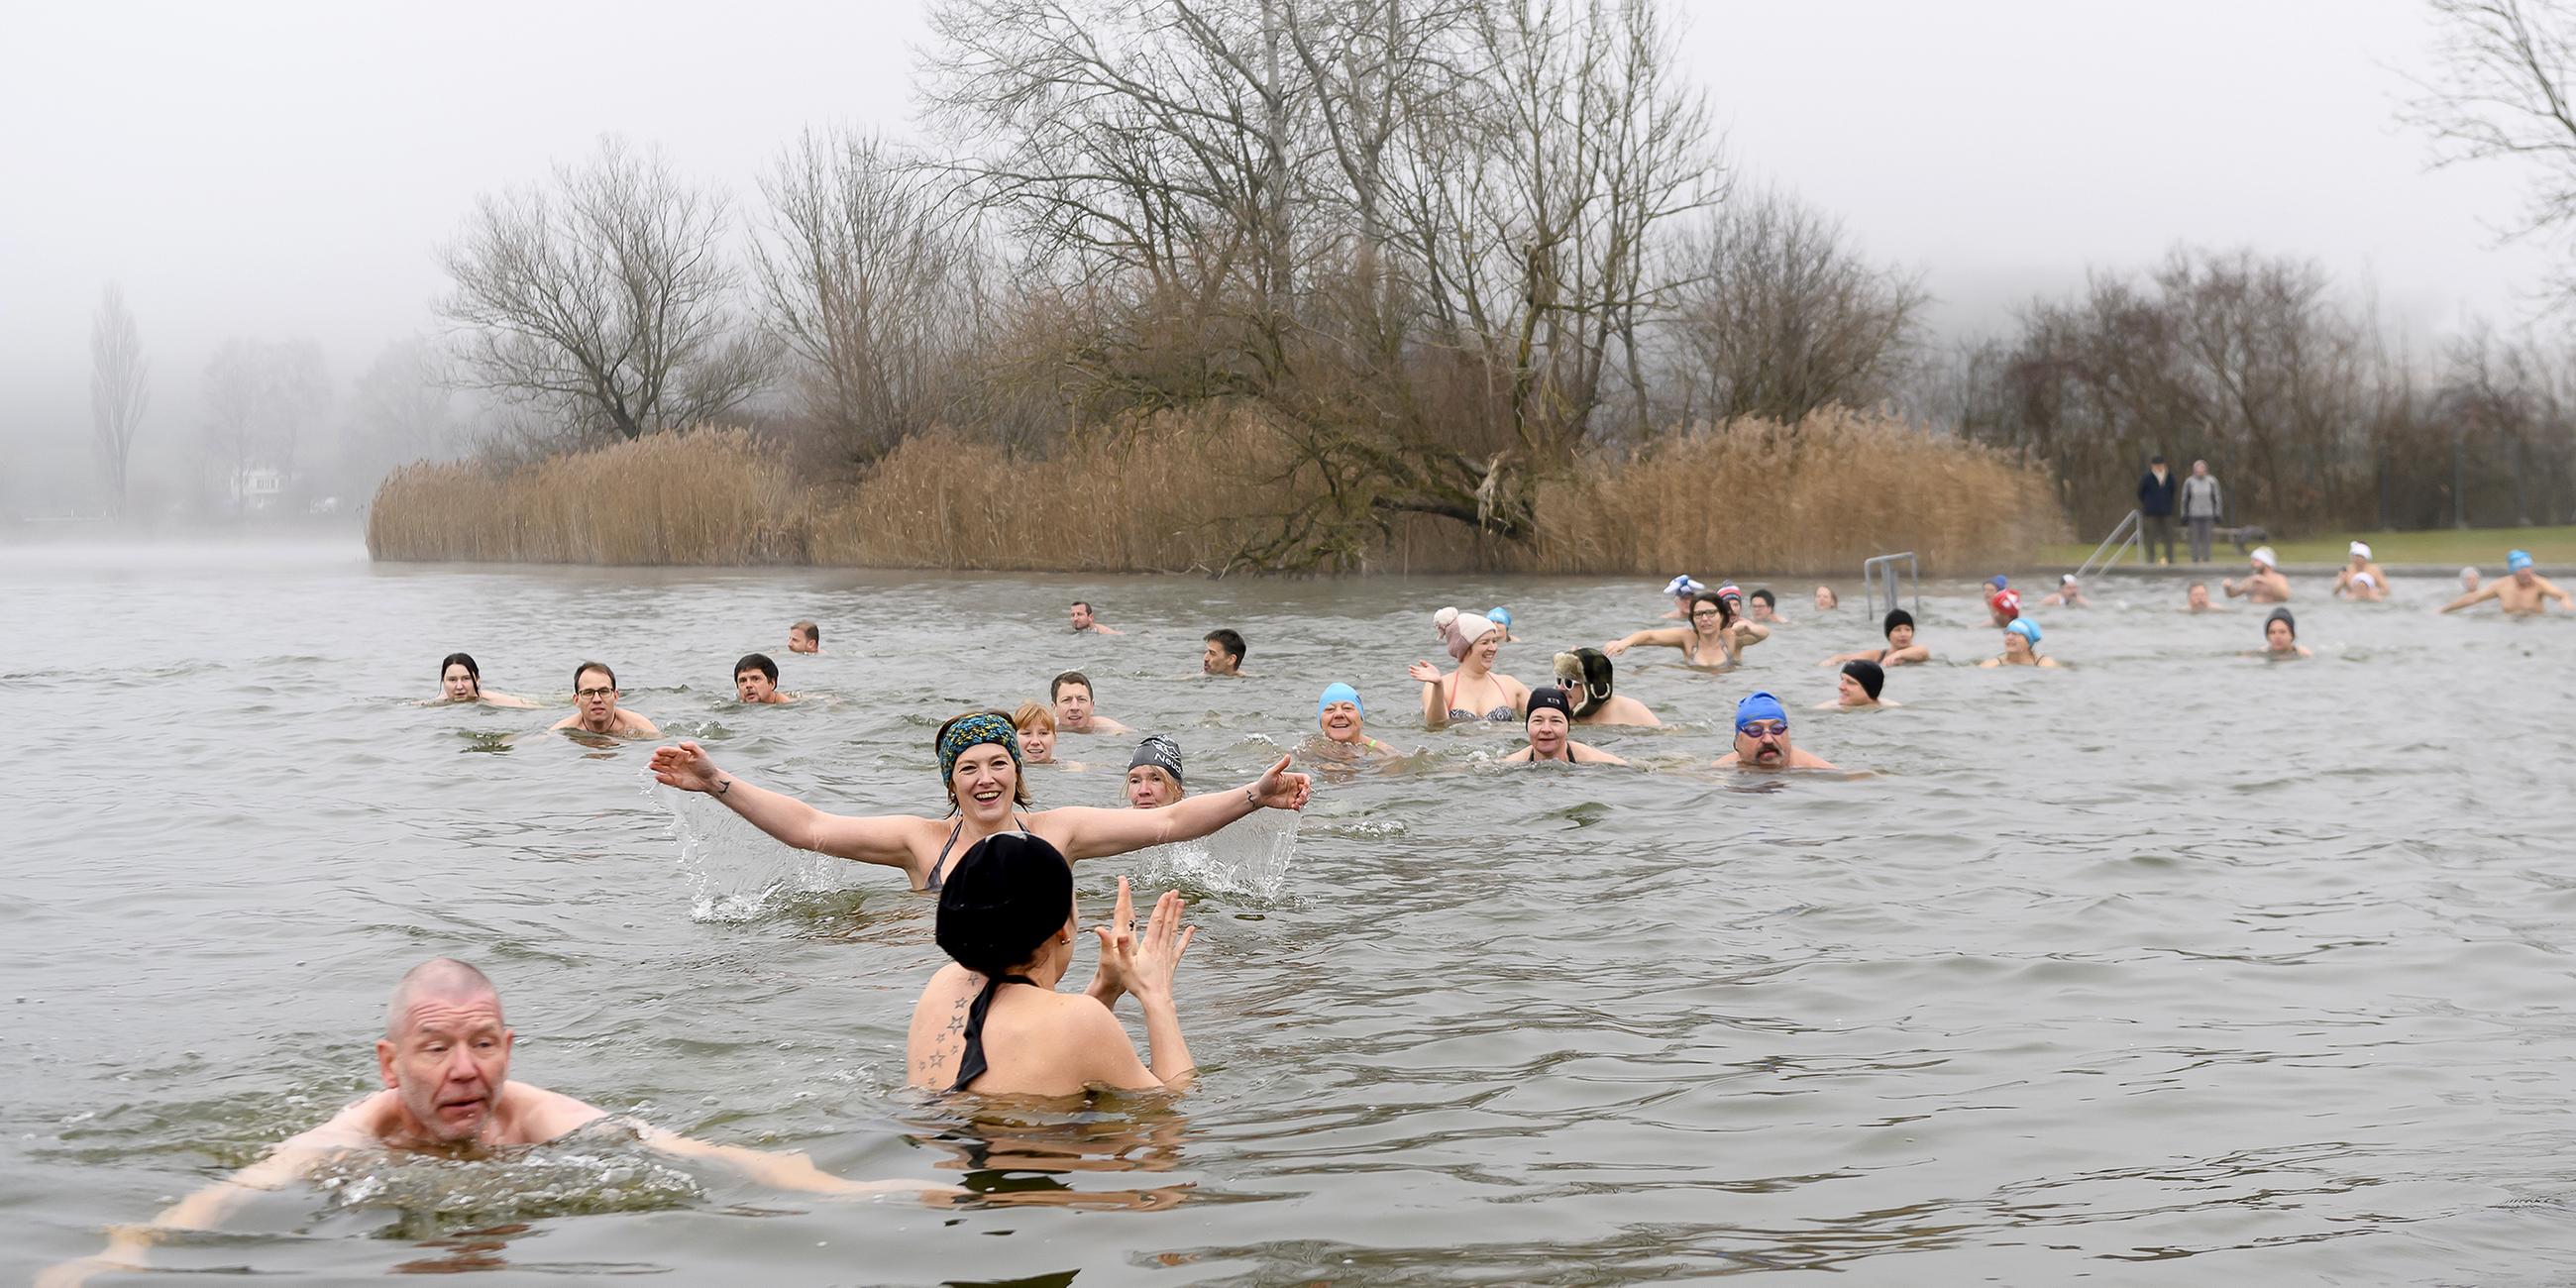 Silvesterschwimmenn bei 4 Grad Celsius Wassertemperatur im Moossee bei Moosseedorf, Schweiz